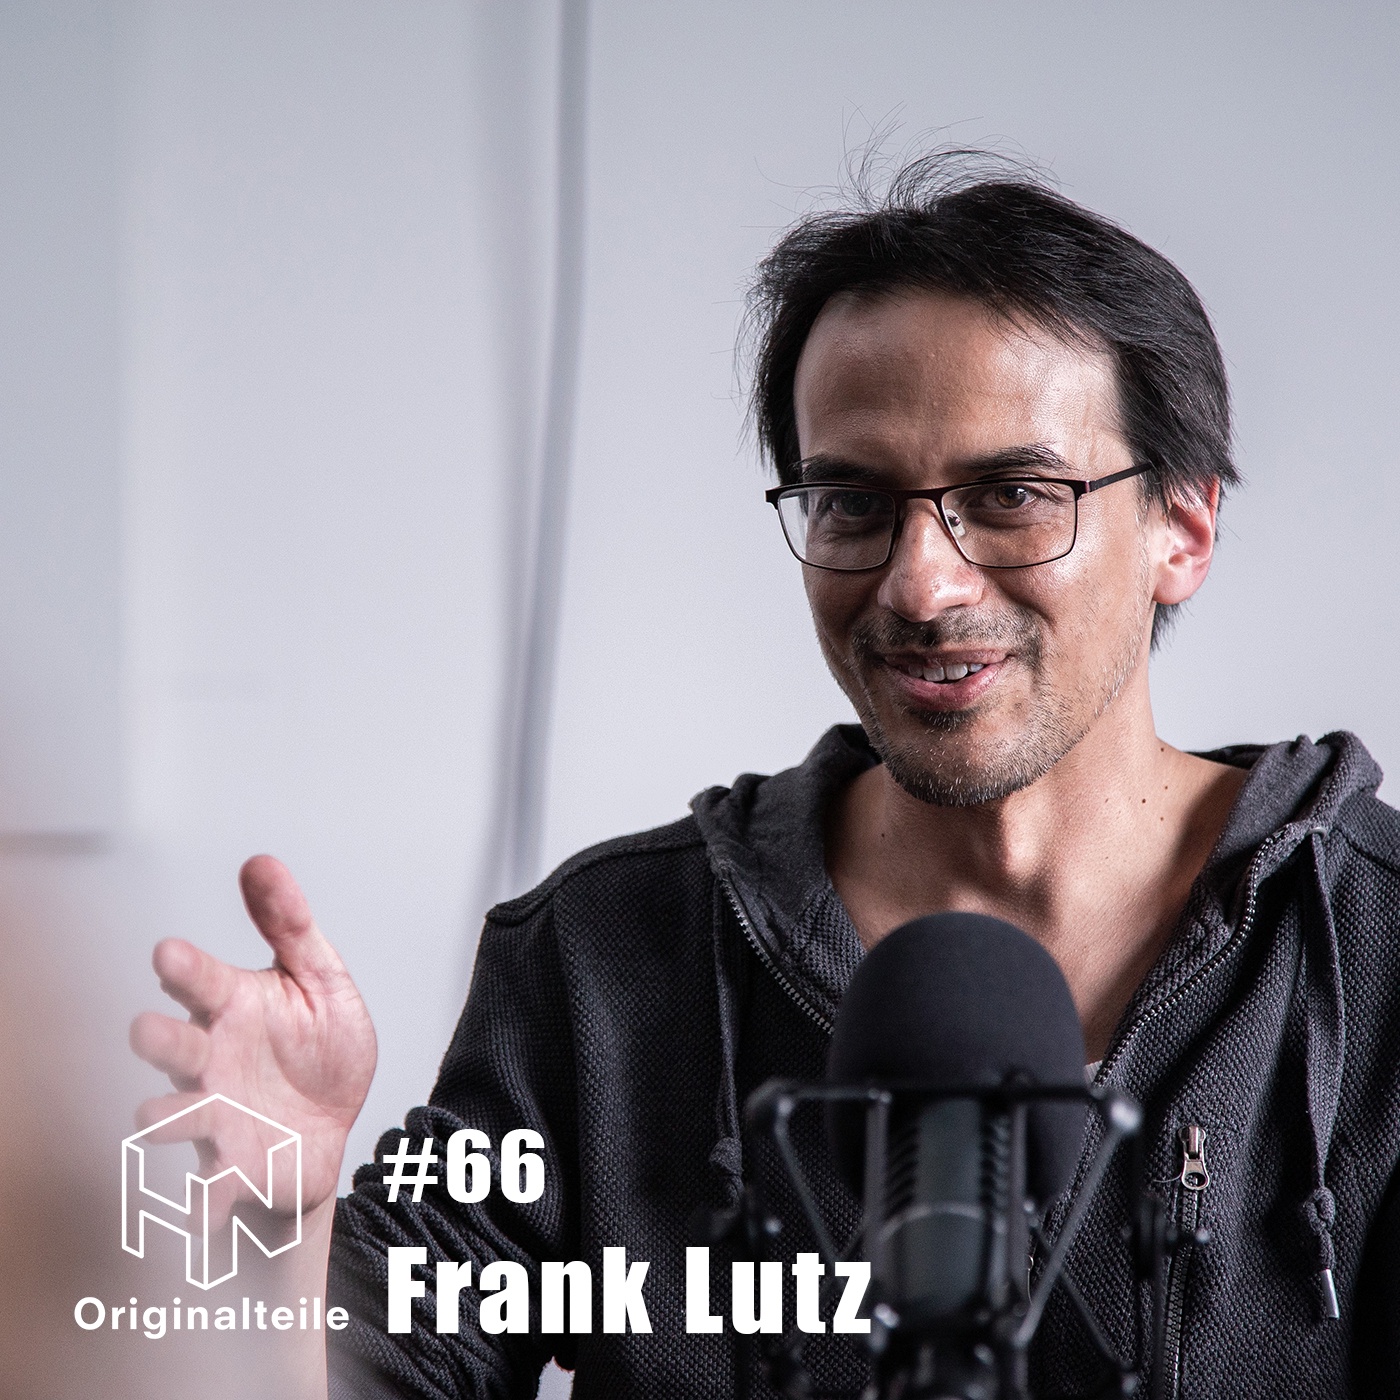 Originalteile-Podcast - Folge #66 mit Frank Lutz (Musiker & PR Manager)